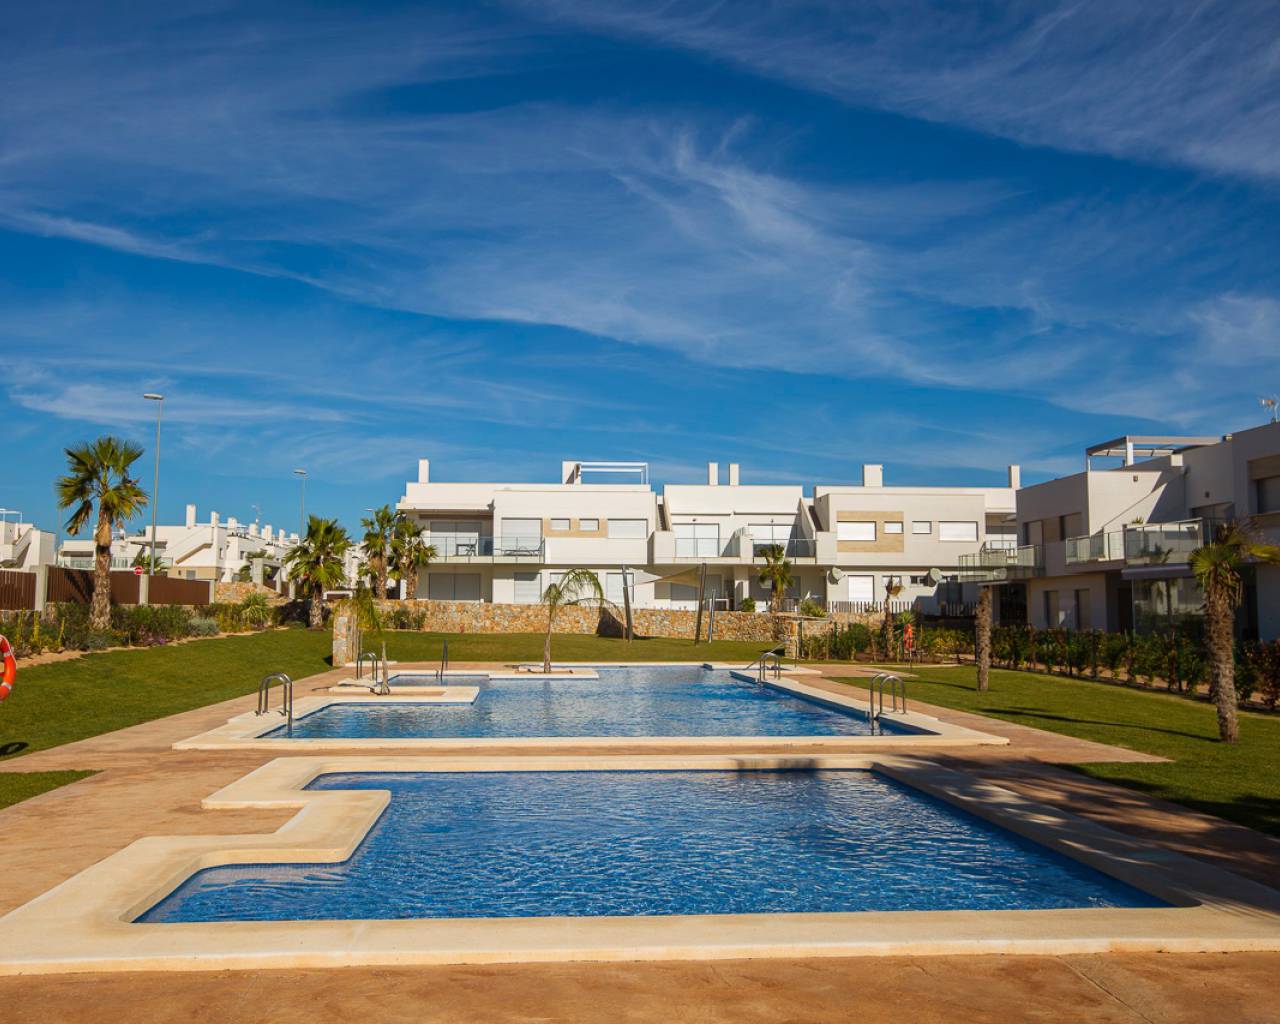 Capri 7 apartments on Vistabella Golf resort